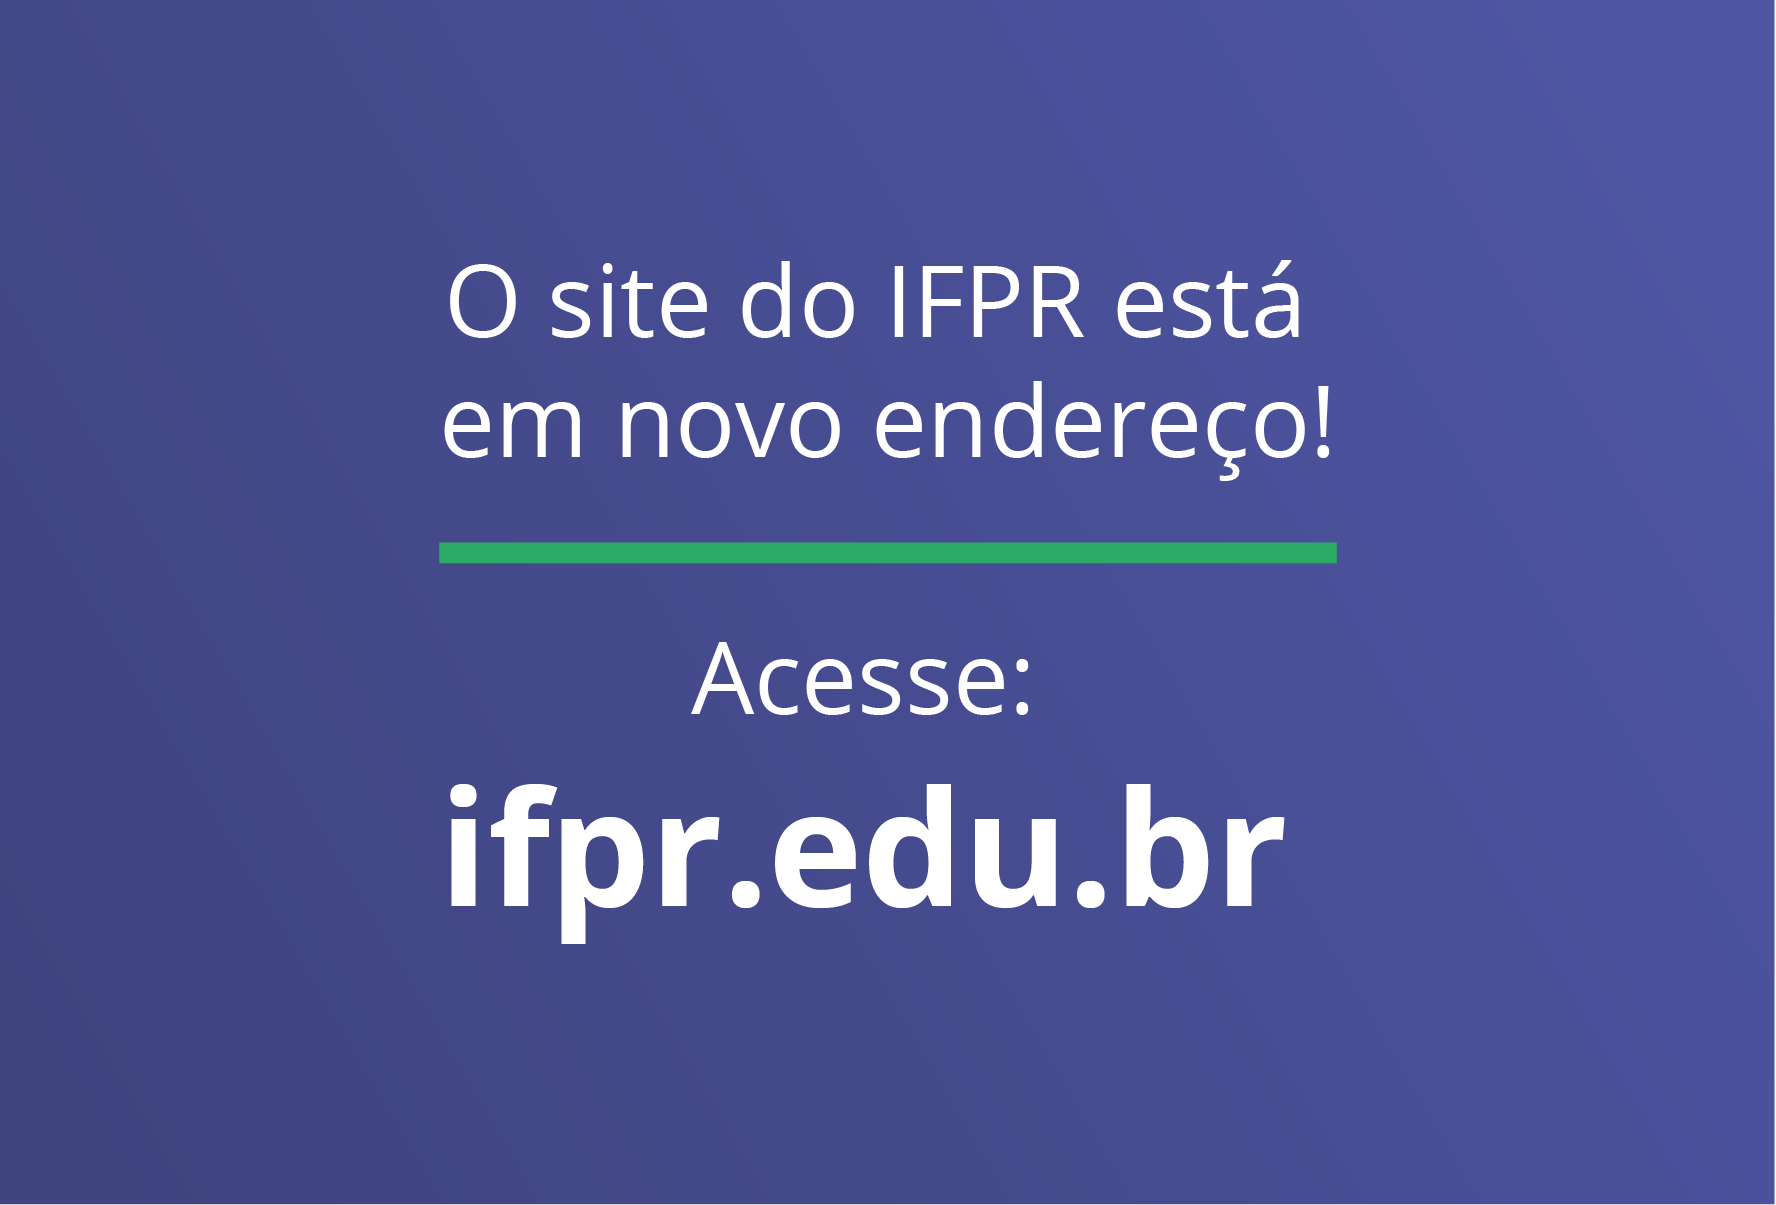 Imagem com fundo colorido. Em primeiro plano, estão as frases: "O site do IFPR está em novo endereço" e "Acesse: ifpr.edu.br".